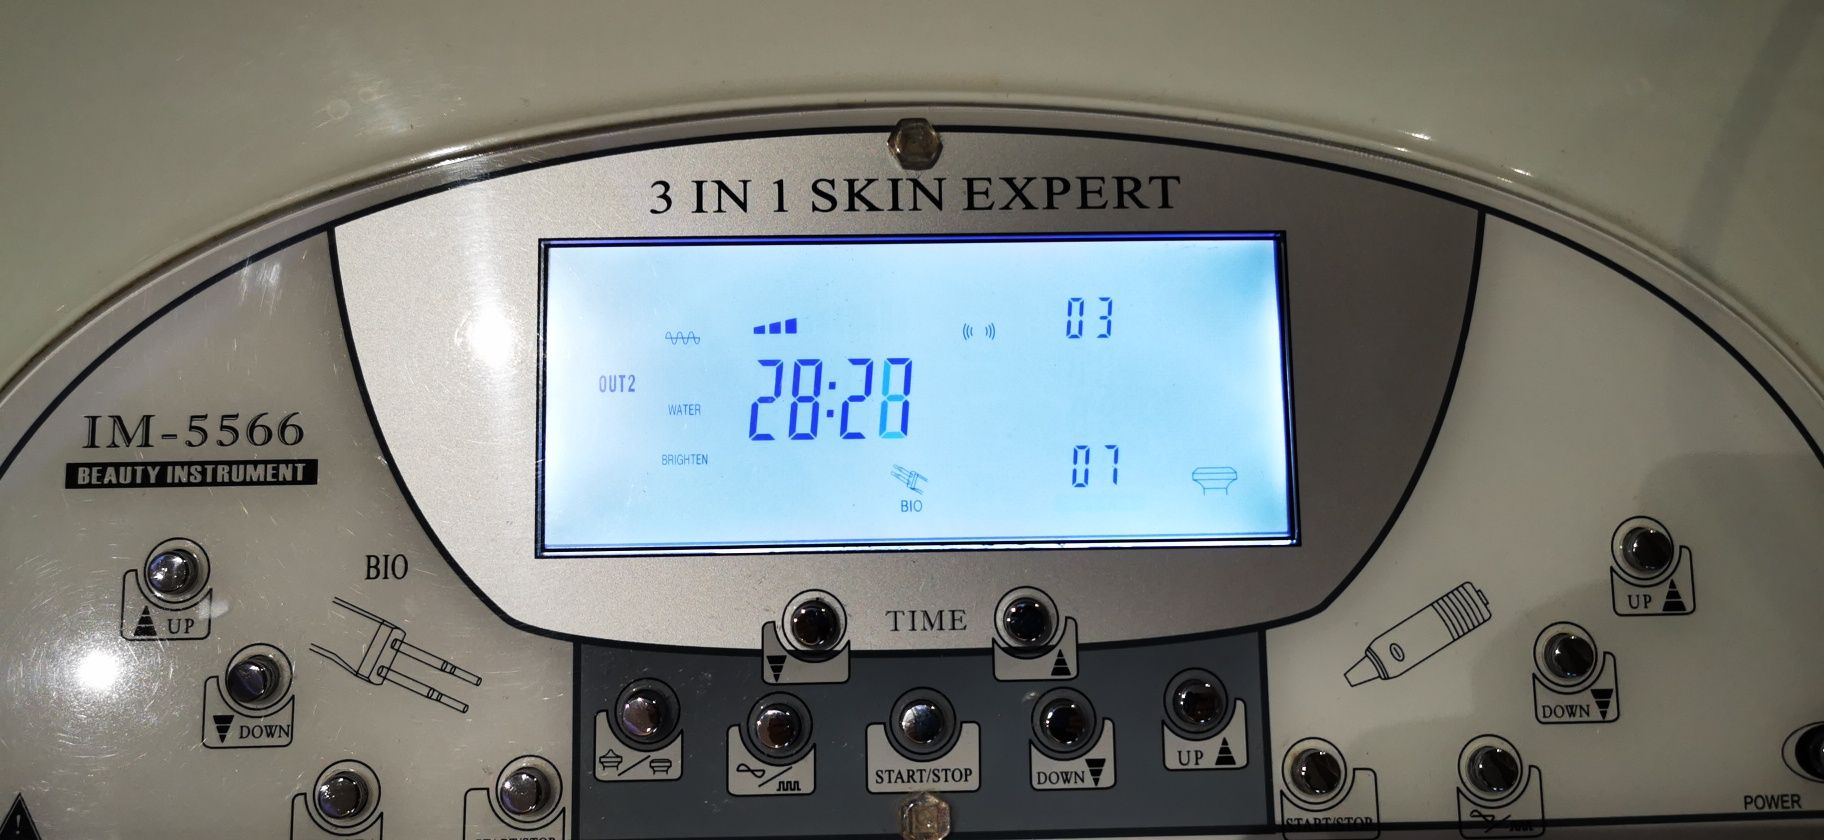 Urządzenie 3 w 1 Skin Expert 5566 ultradziękowa